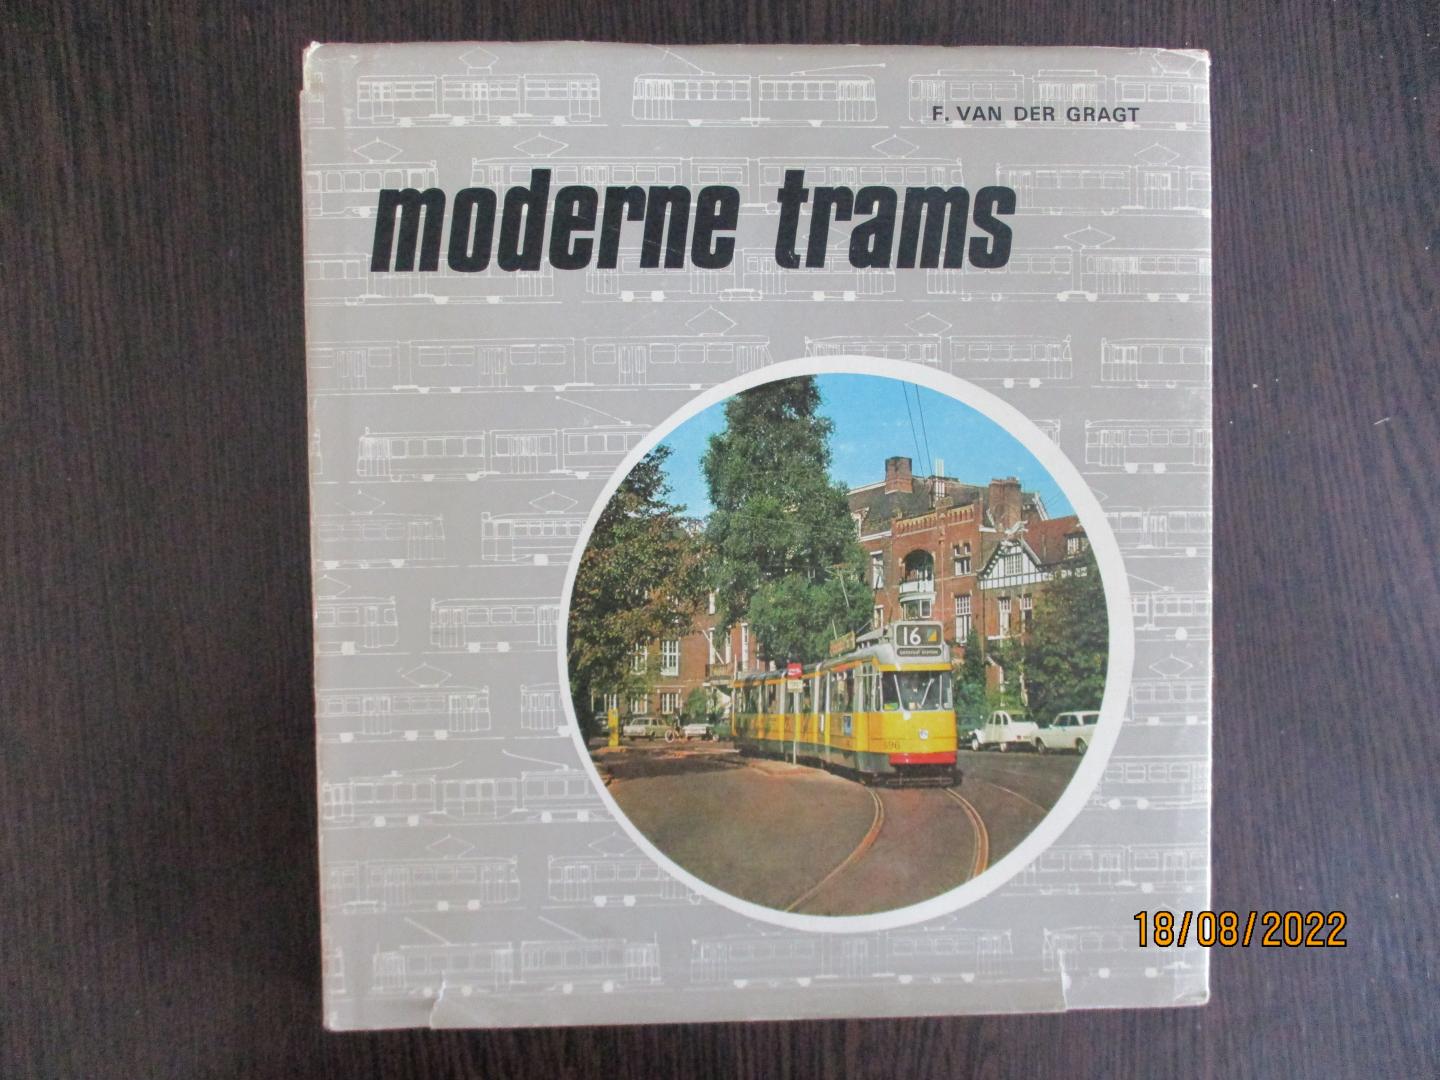 Gragt, F. van der - Moderne trams - de ontwikkeling van de moderne tram in Europa van 1927 tot heden.